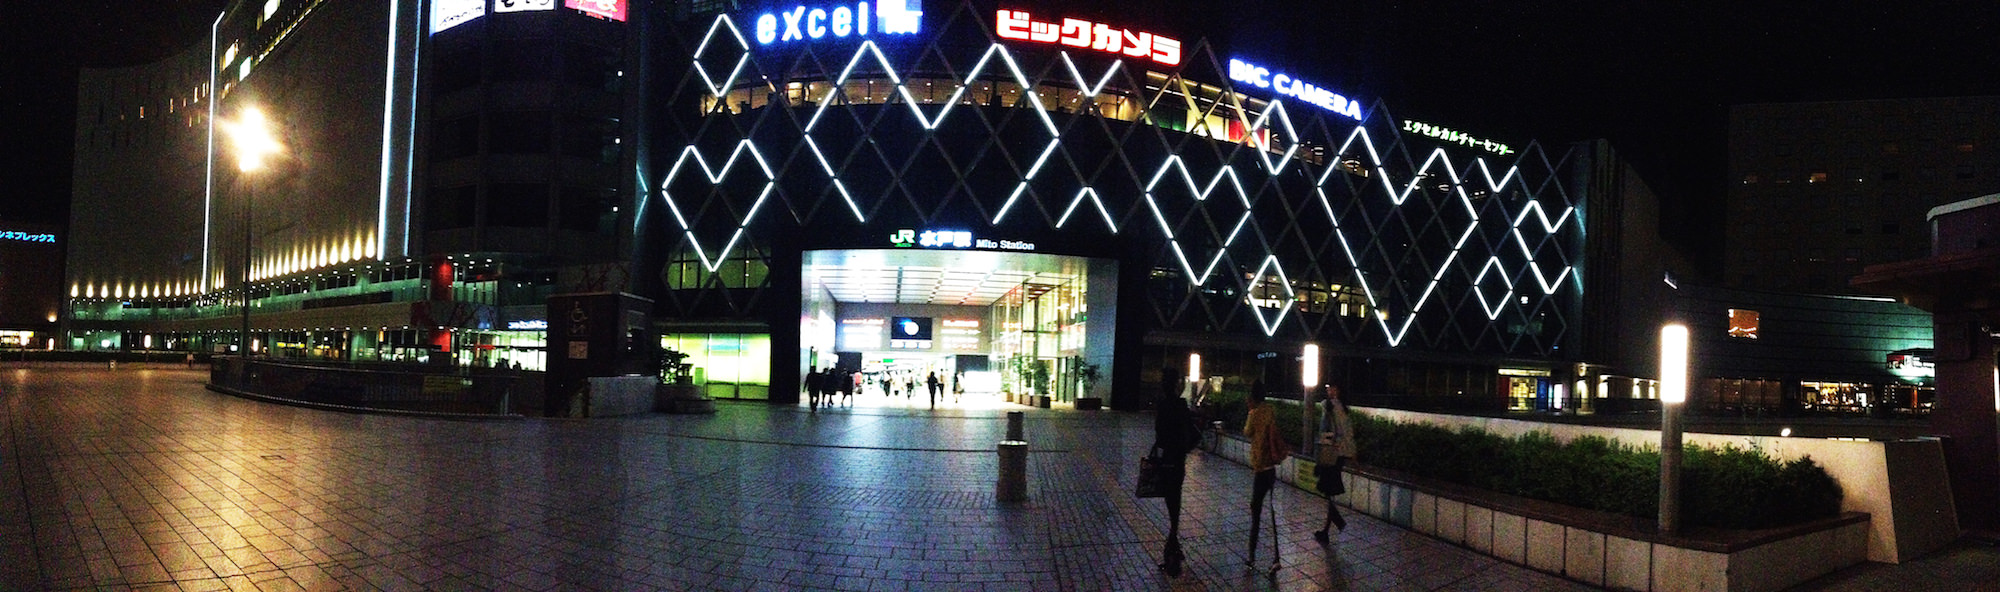 水戸駅前のパノラマ撮影